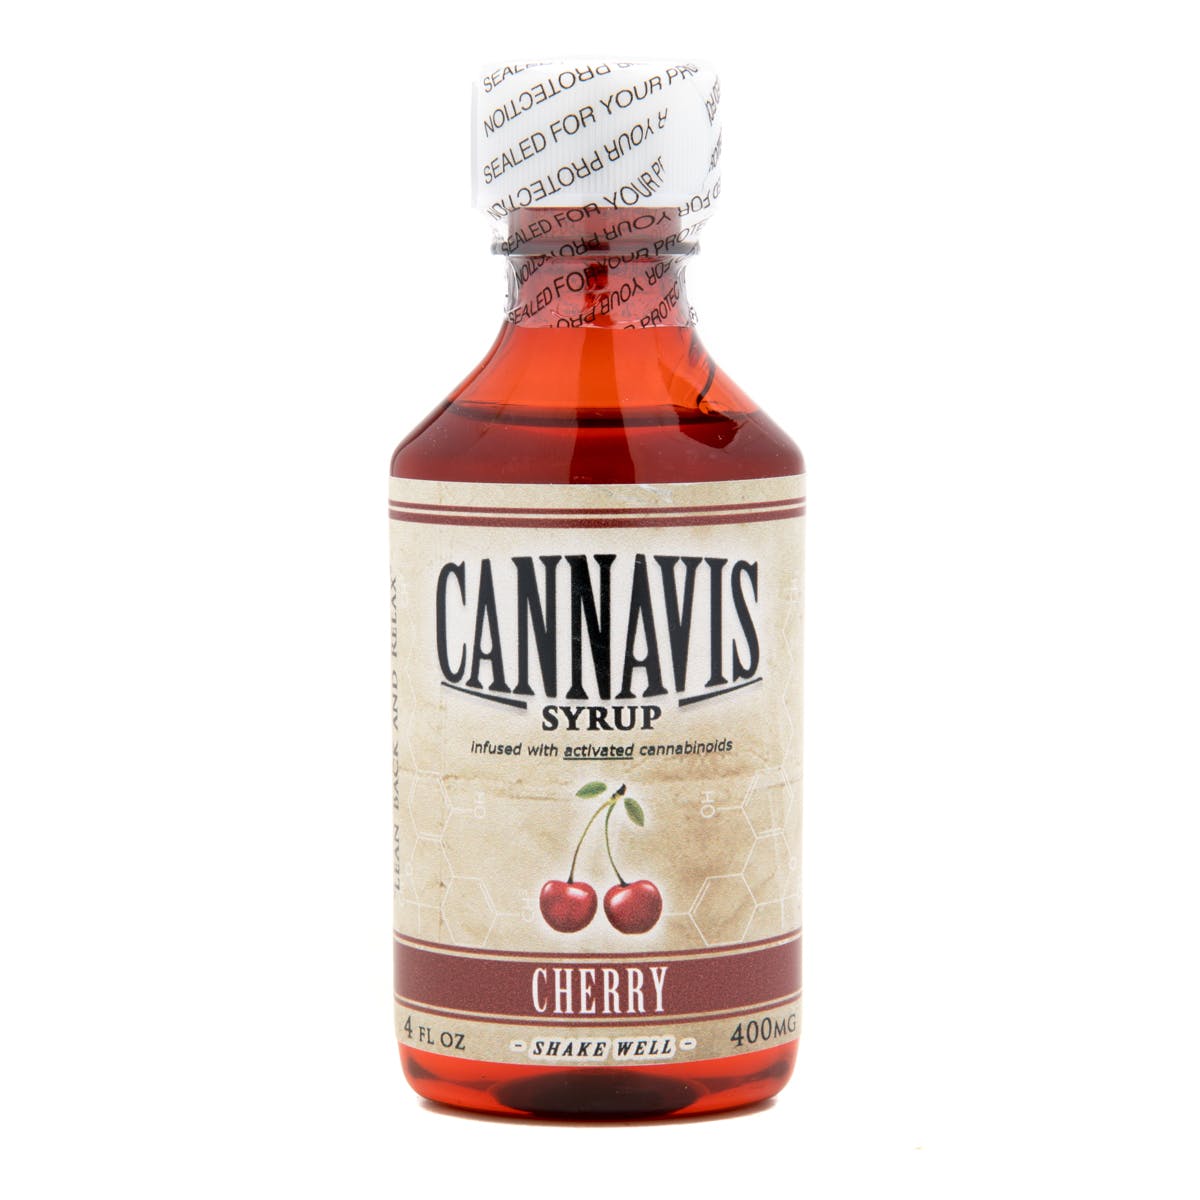 edible-cannavis-syrup-2c-cherry-400mg